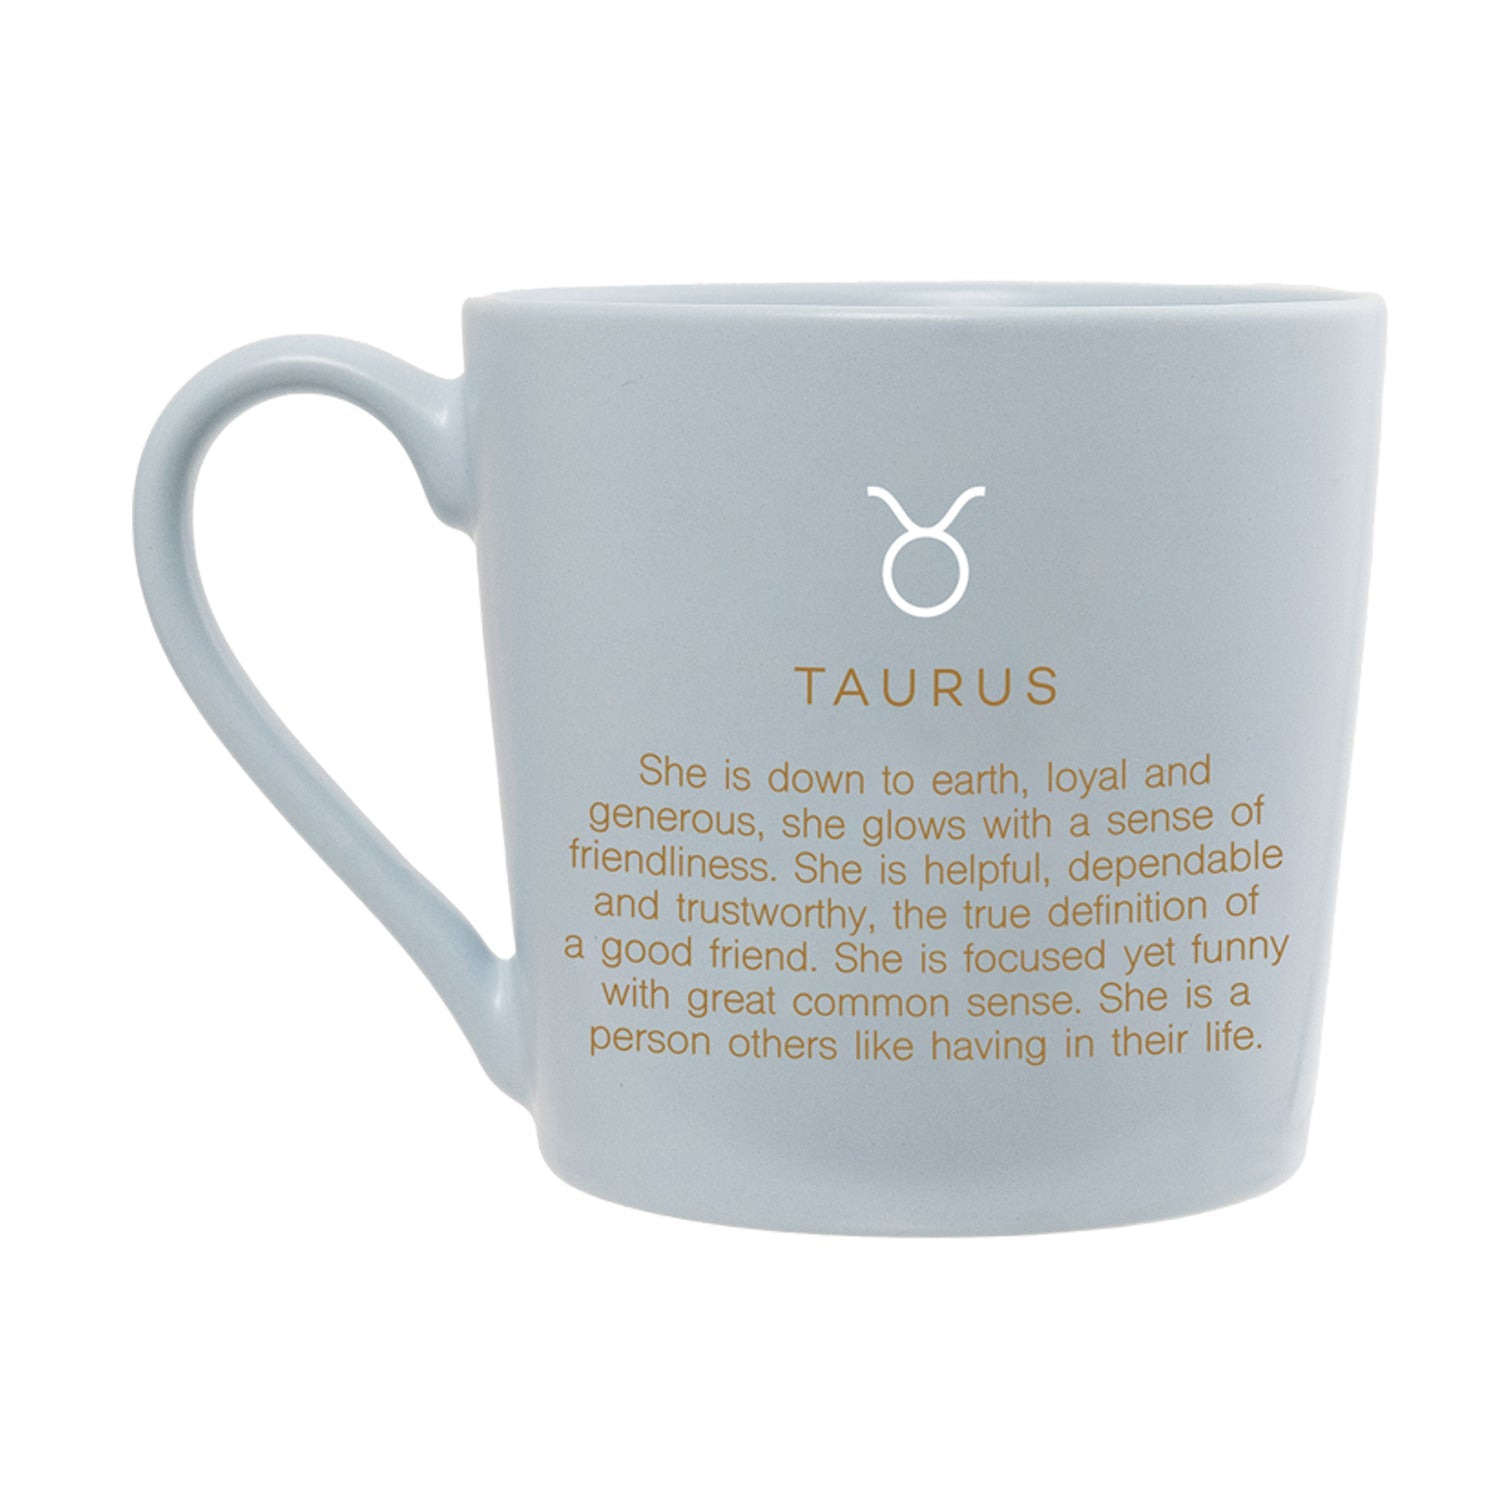 Splosh - Mystique Mug - Taurus